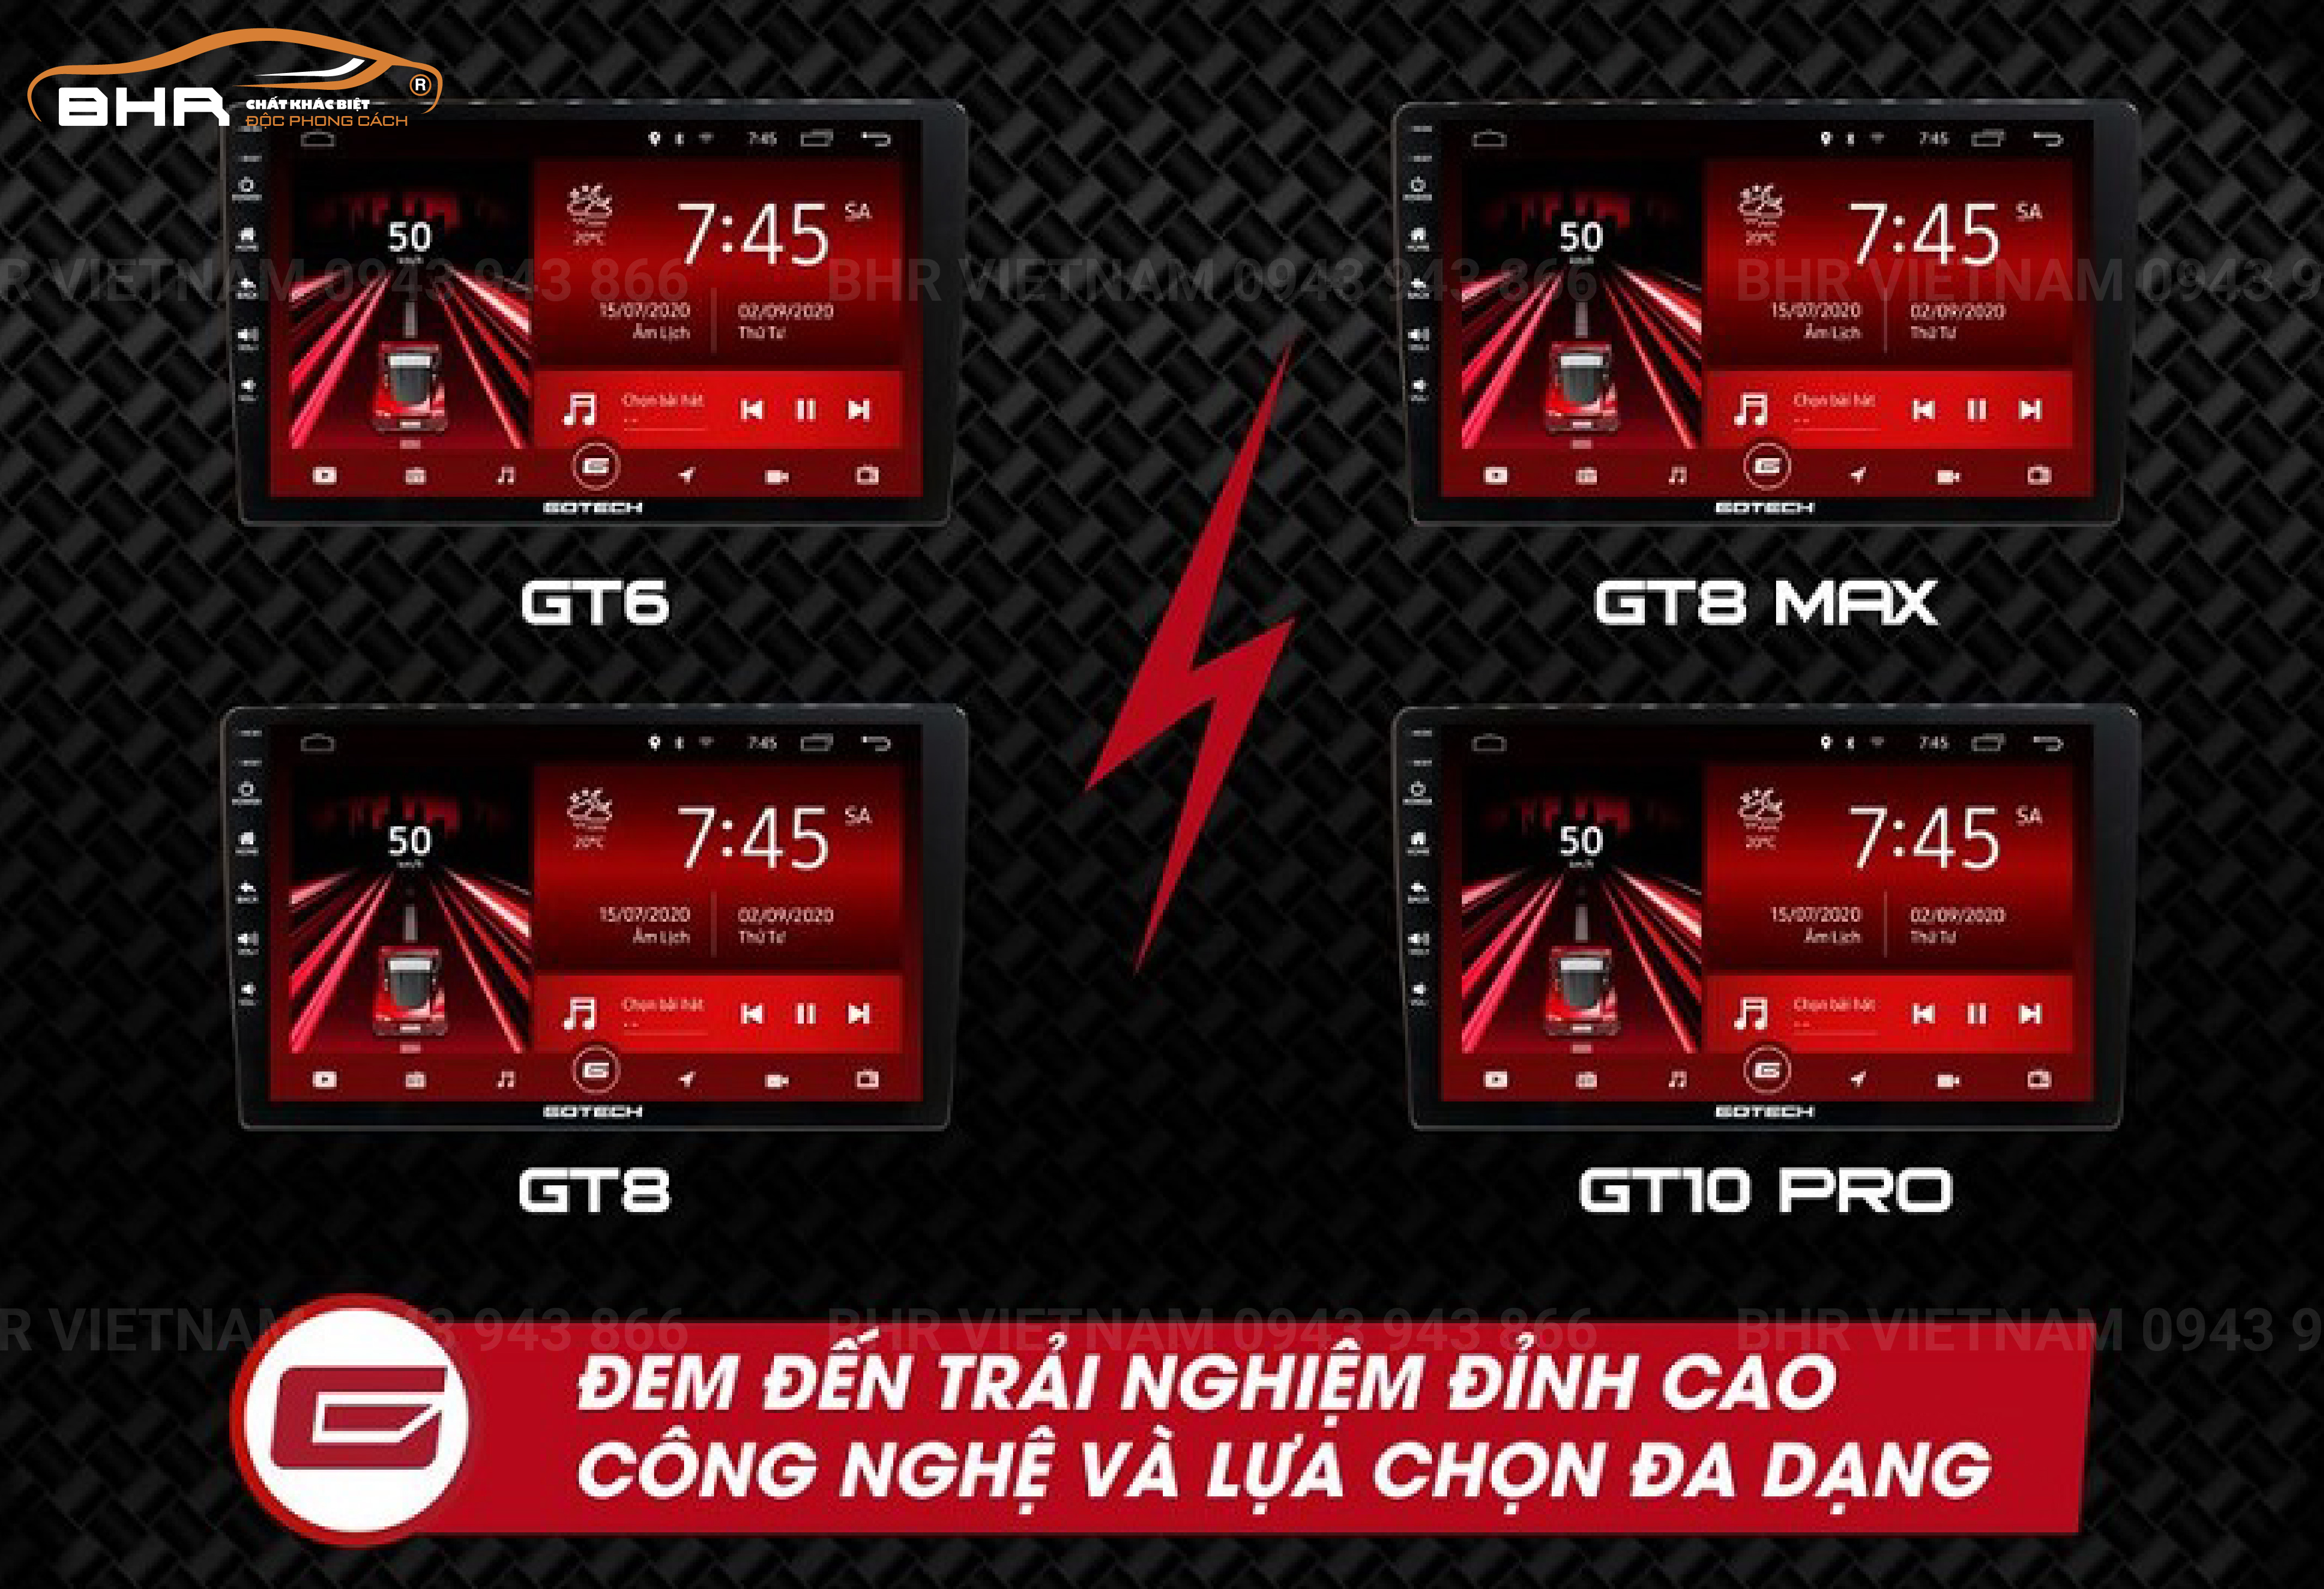 Gotech có 4 phân khúc sản phẩm: GT6, GT8, GT8 MAX, GT10 PRO